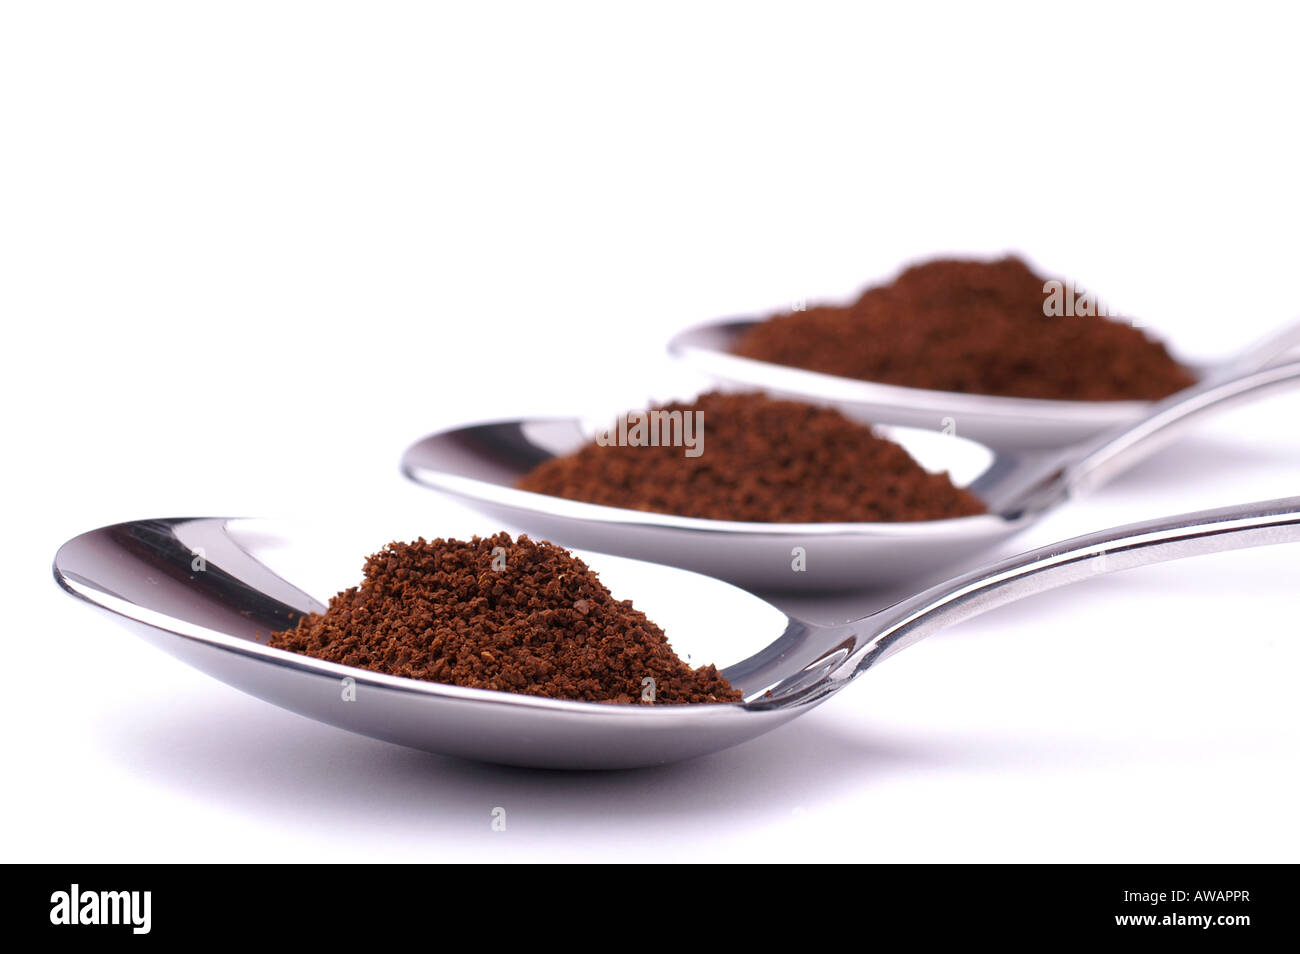 Cucchiai di caffè /Löffel mit gemahlenem Kaffee Foto Stock